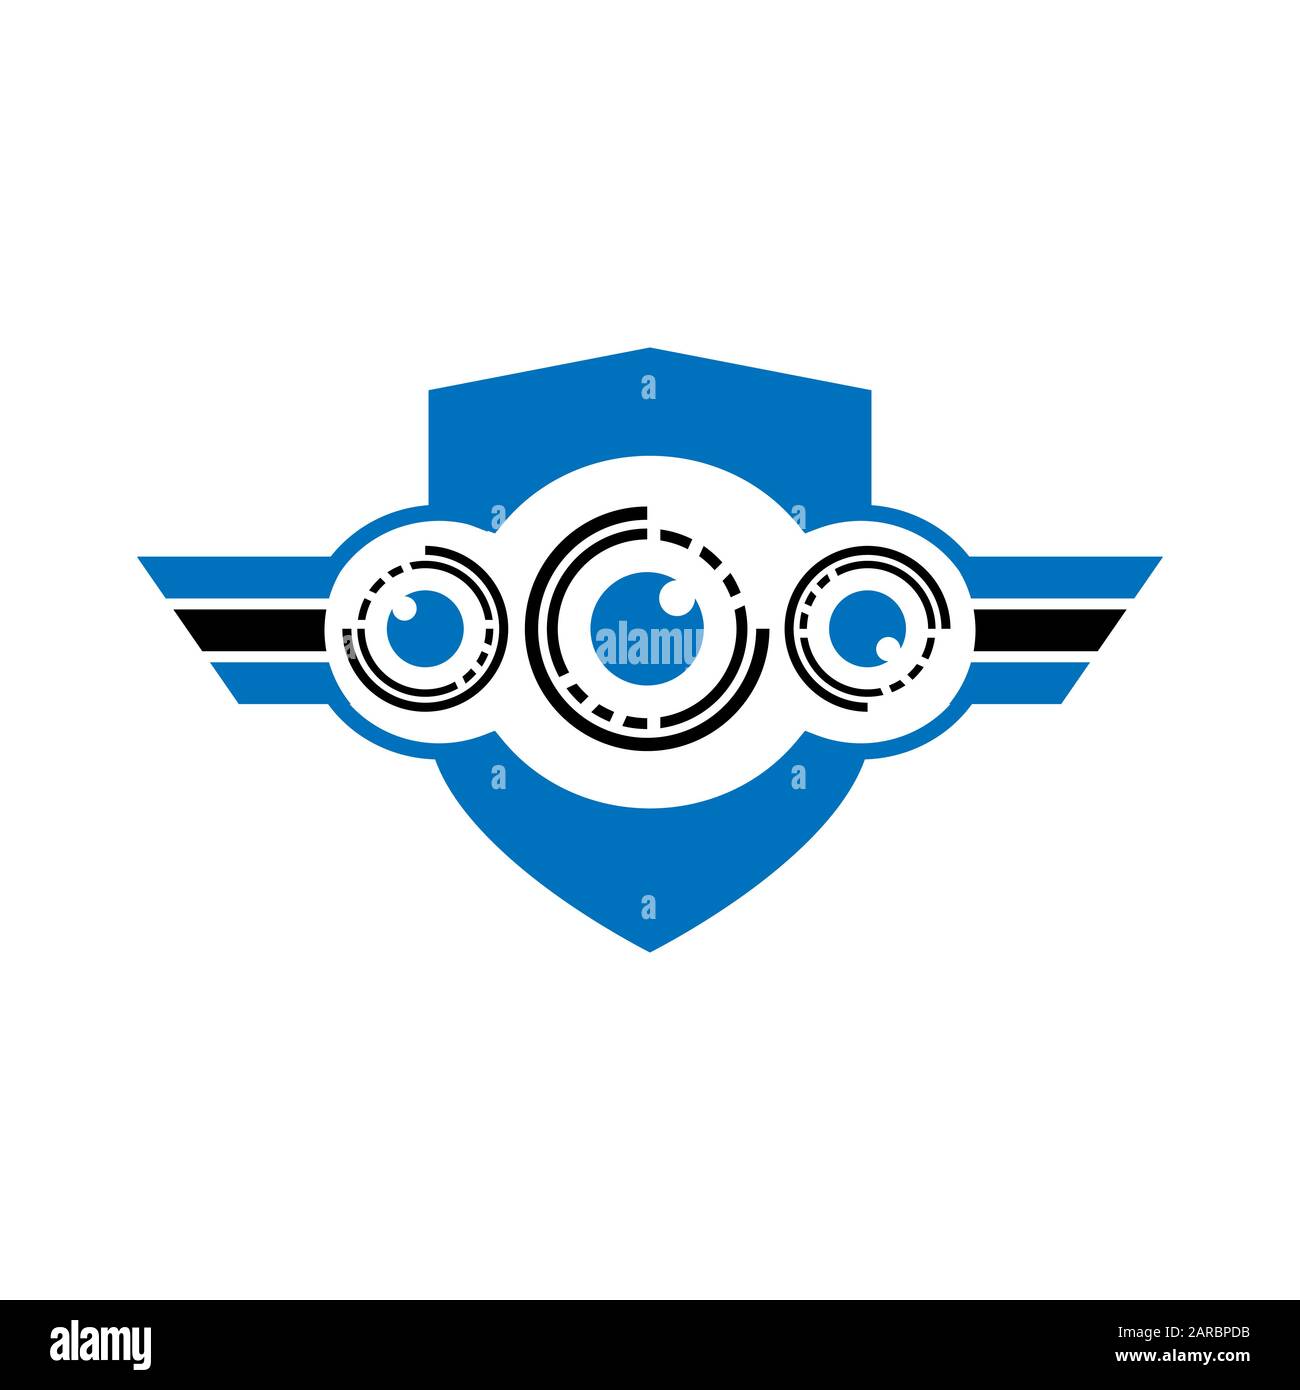 Logo Draone Pour Les Yeux Volants. Illustration Du Logo Graphic Design De L'Icône De Caméra Aérienne Illustration de Vecteur